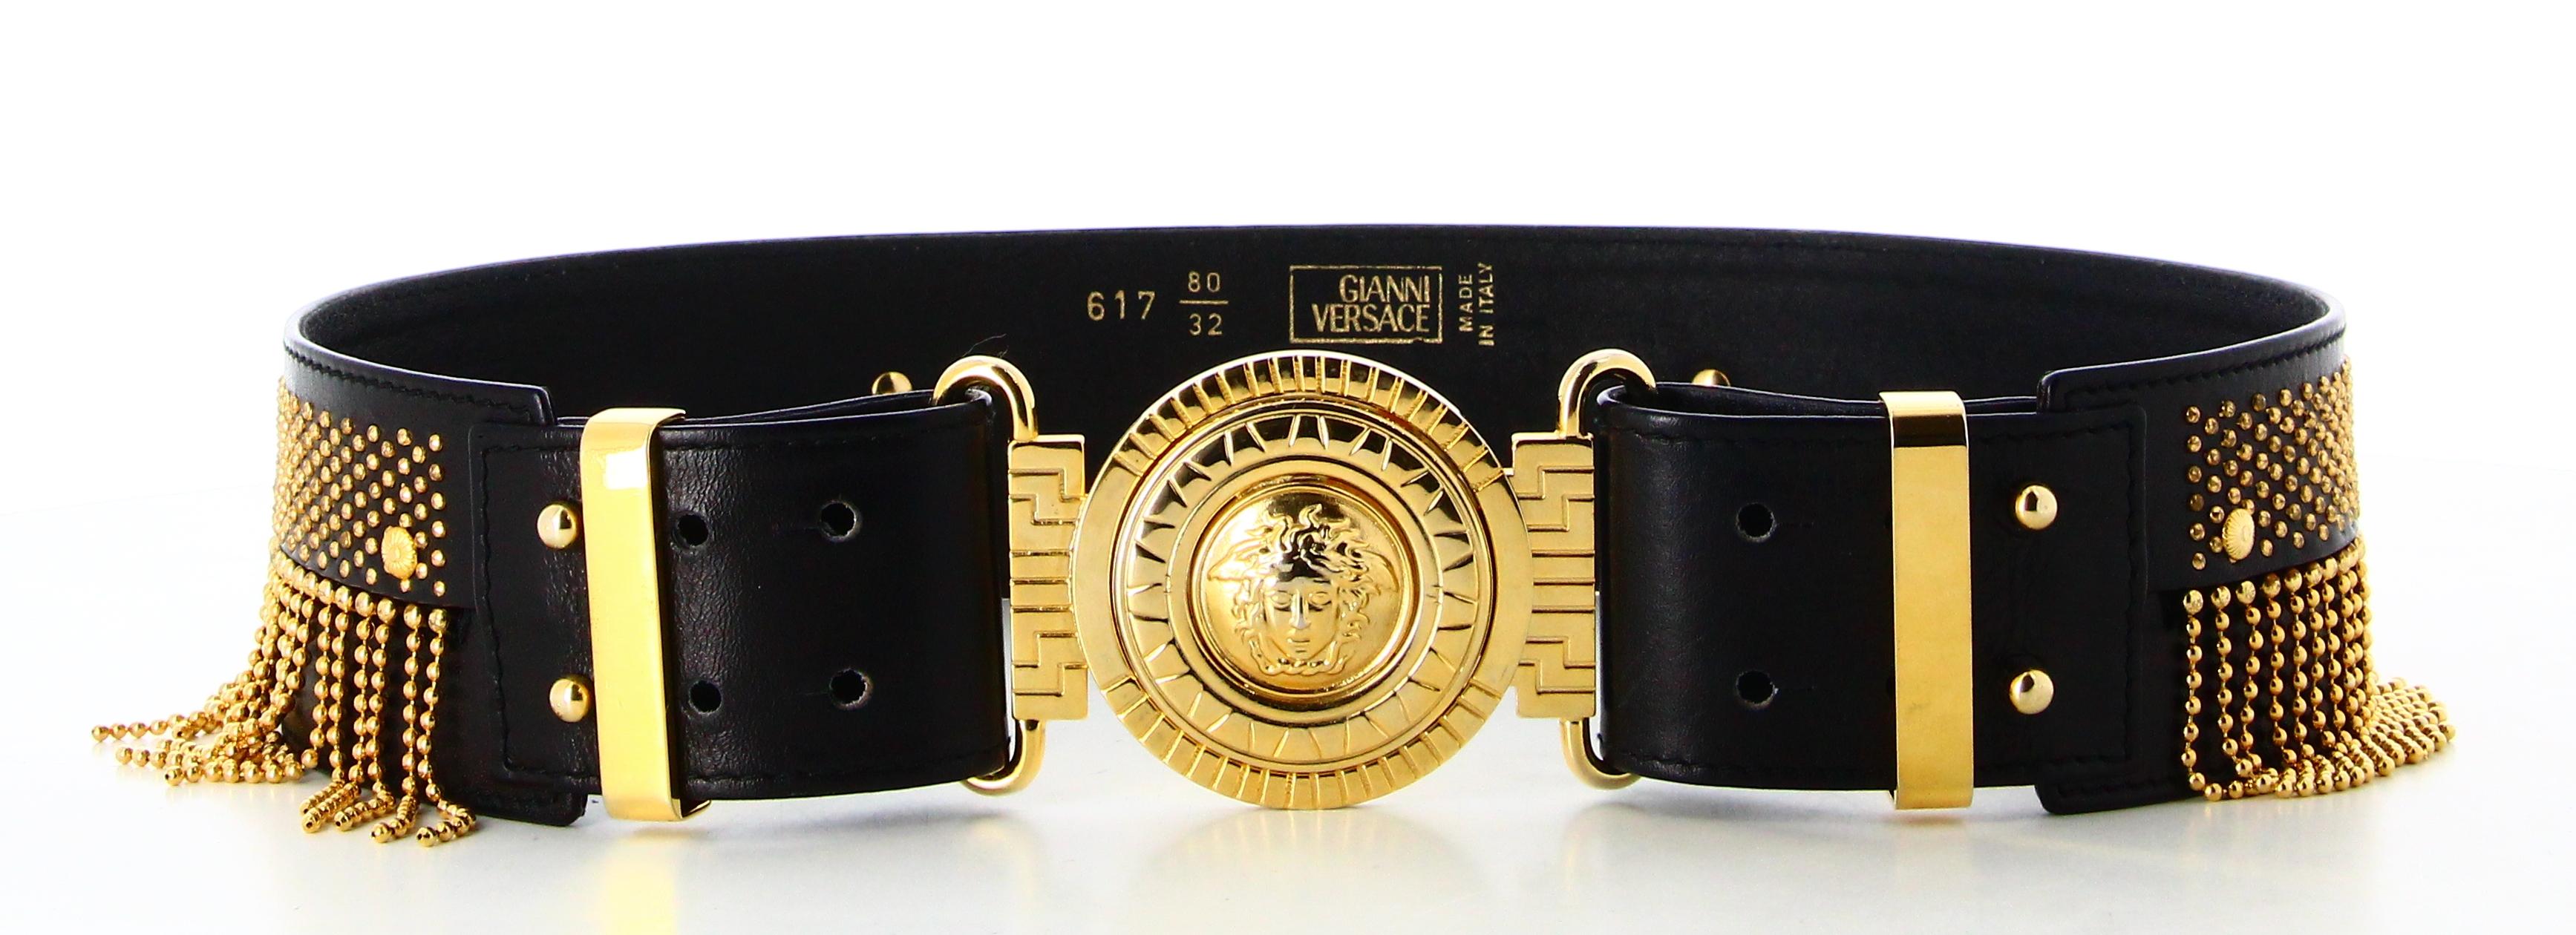 Versace Black Leather Golden Fringe Belt 

- Very good condition. Shows slight signs of wear over time. 
- Versace Black Leather Belt
- Black leather with golden fringe, Versace logo buckle
